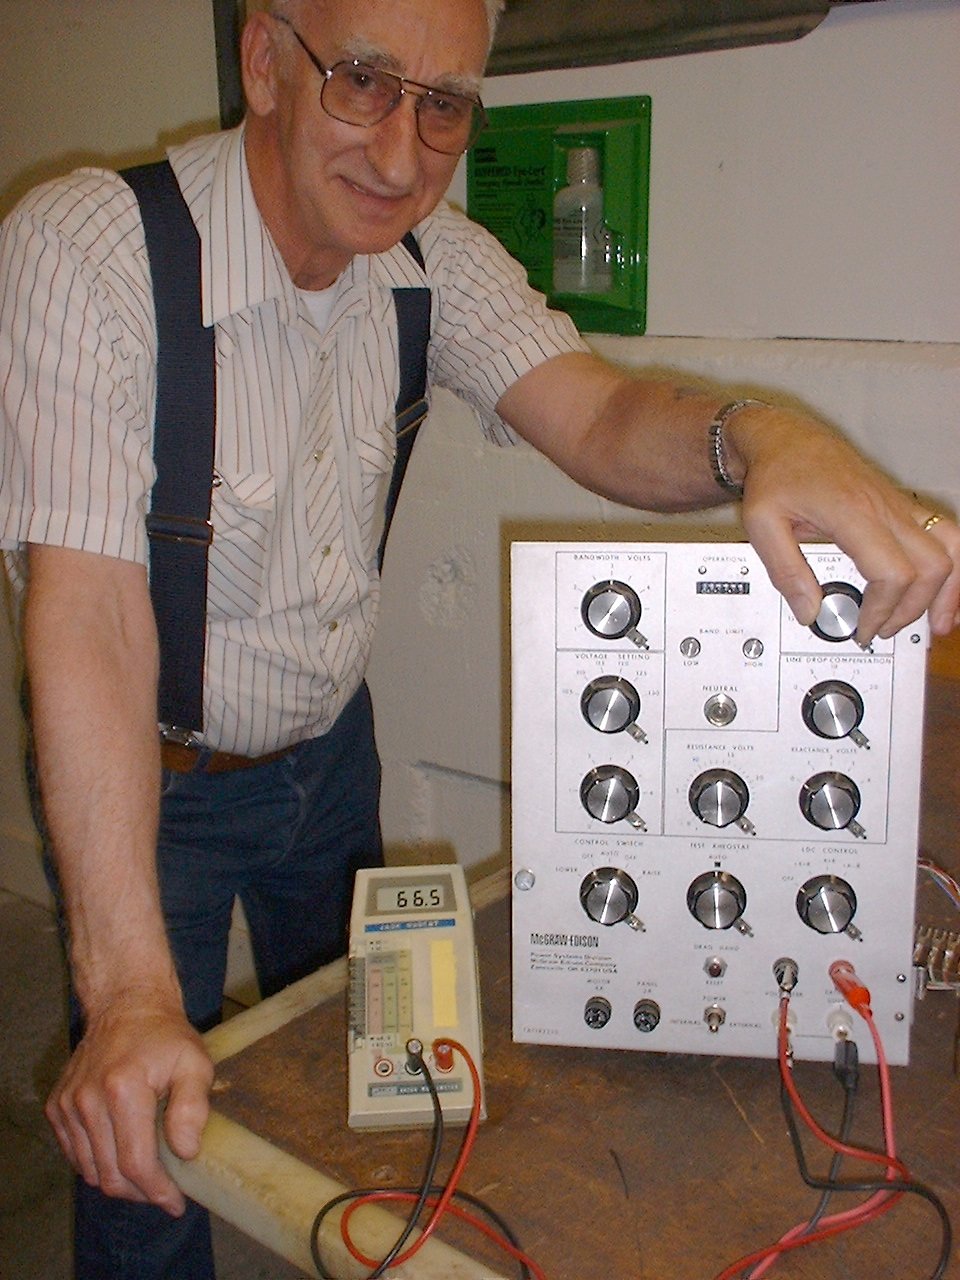 Jack Nugent, prezident společnosti Specialty Engineering, Inc. v roce 2004, a jeho přístroj 8020A.